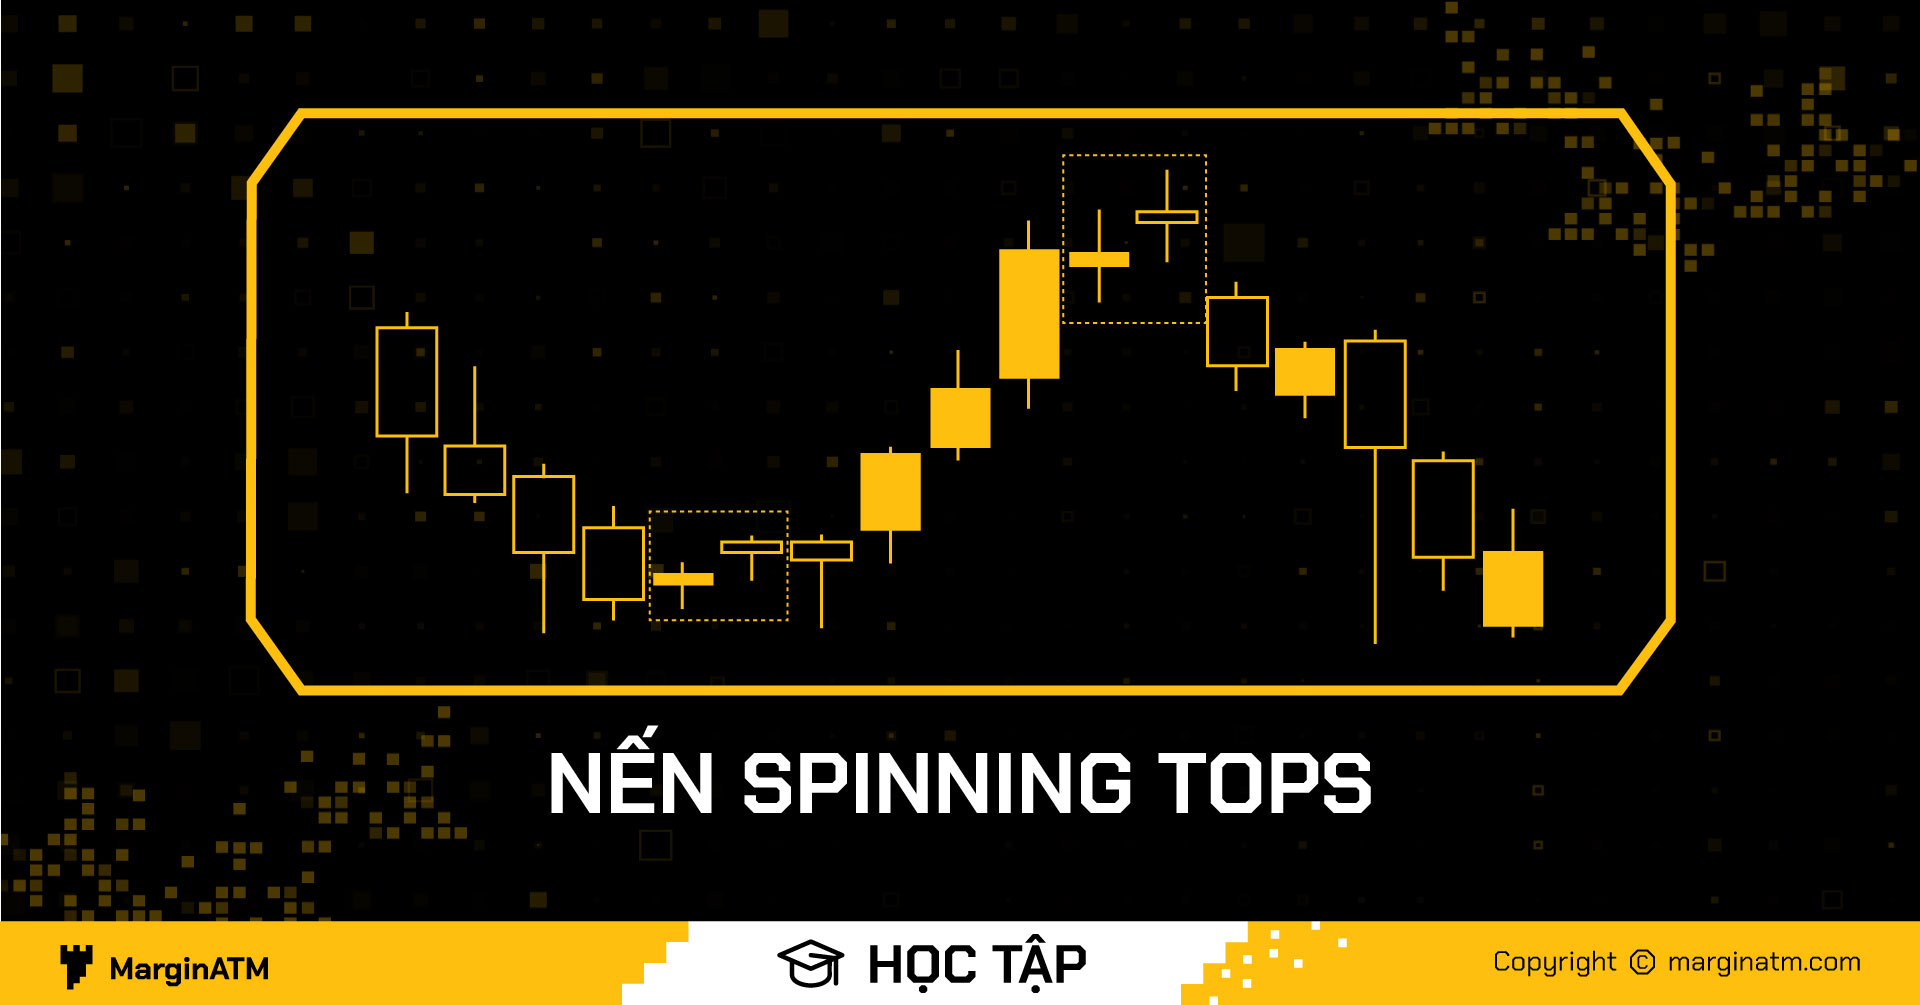 Spinning là gì Tìm hiểu mô hình nến Spinning Tops con xoay